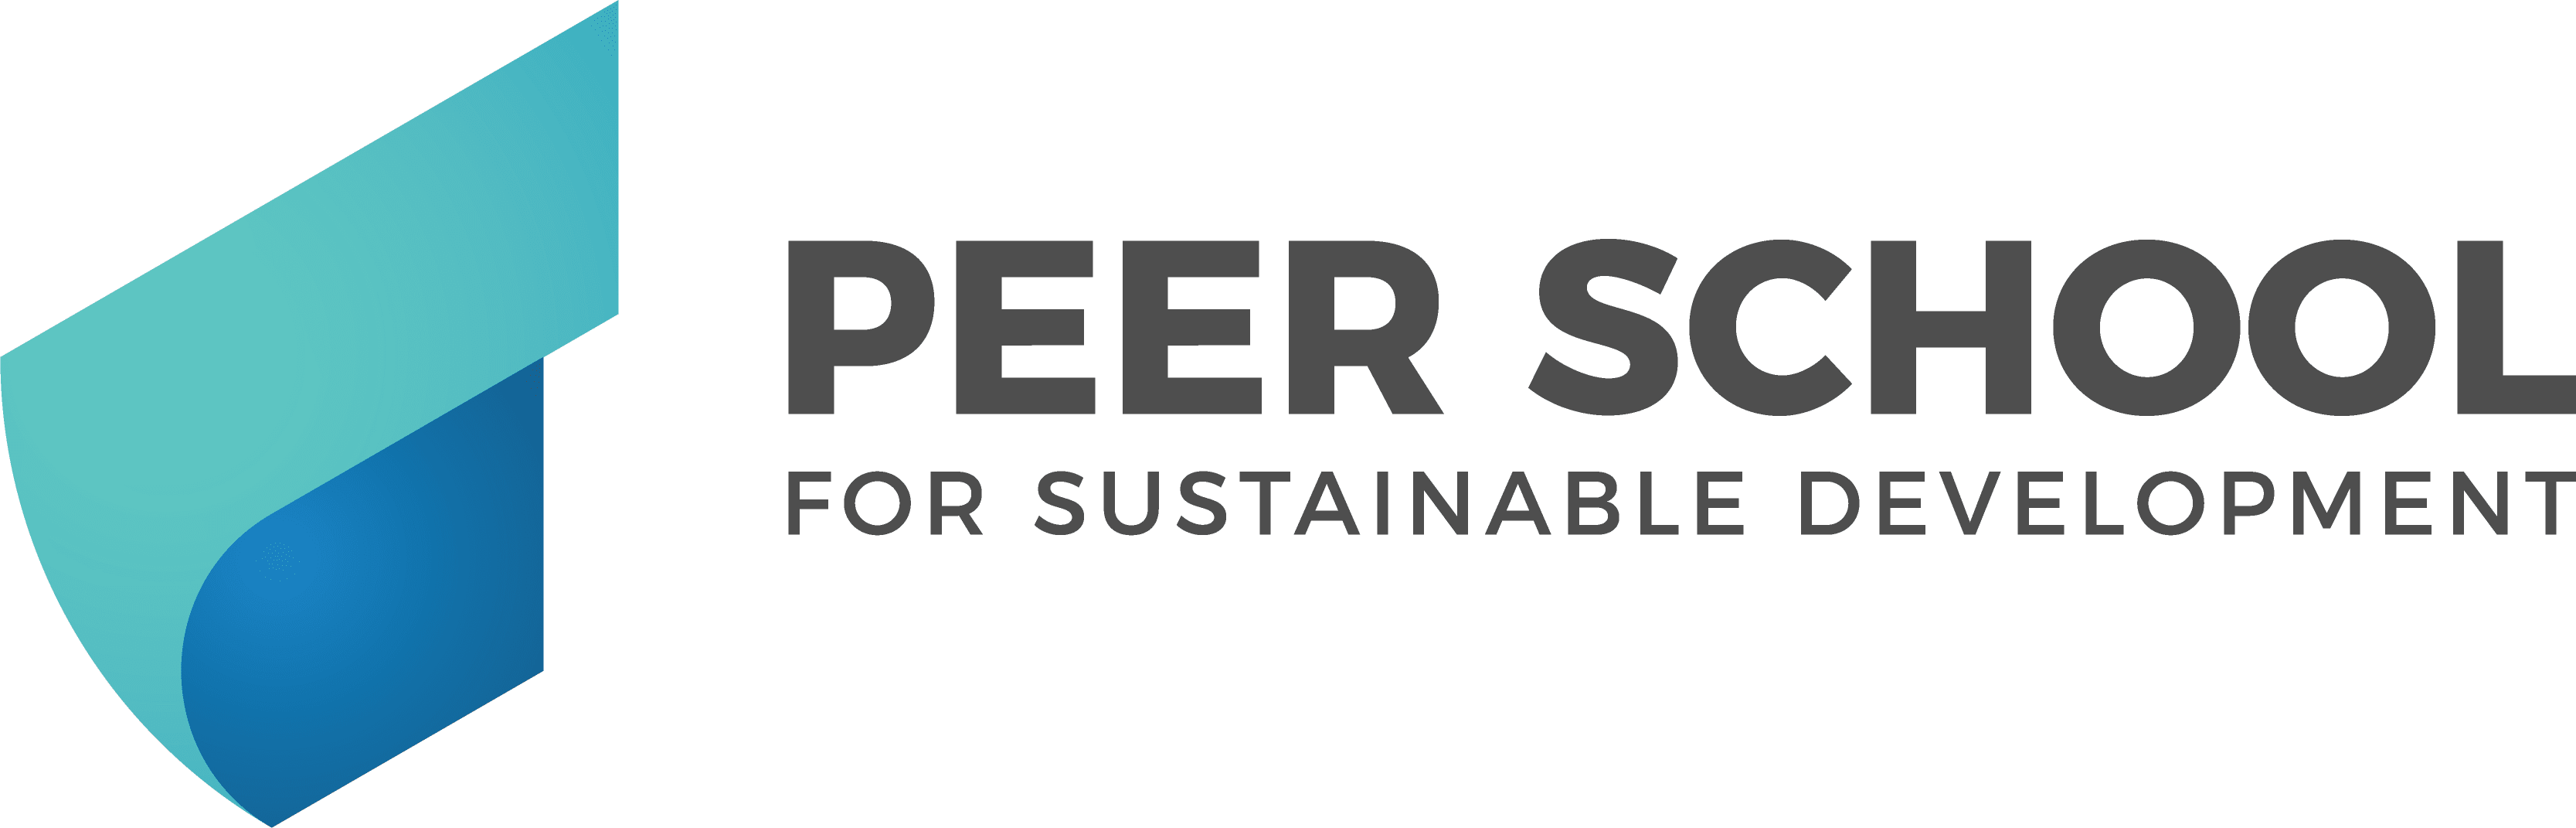 Peer School for Sustainable Development e.V. logo